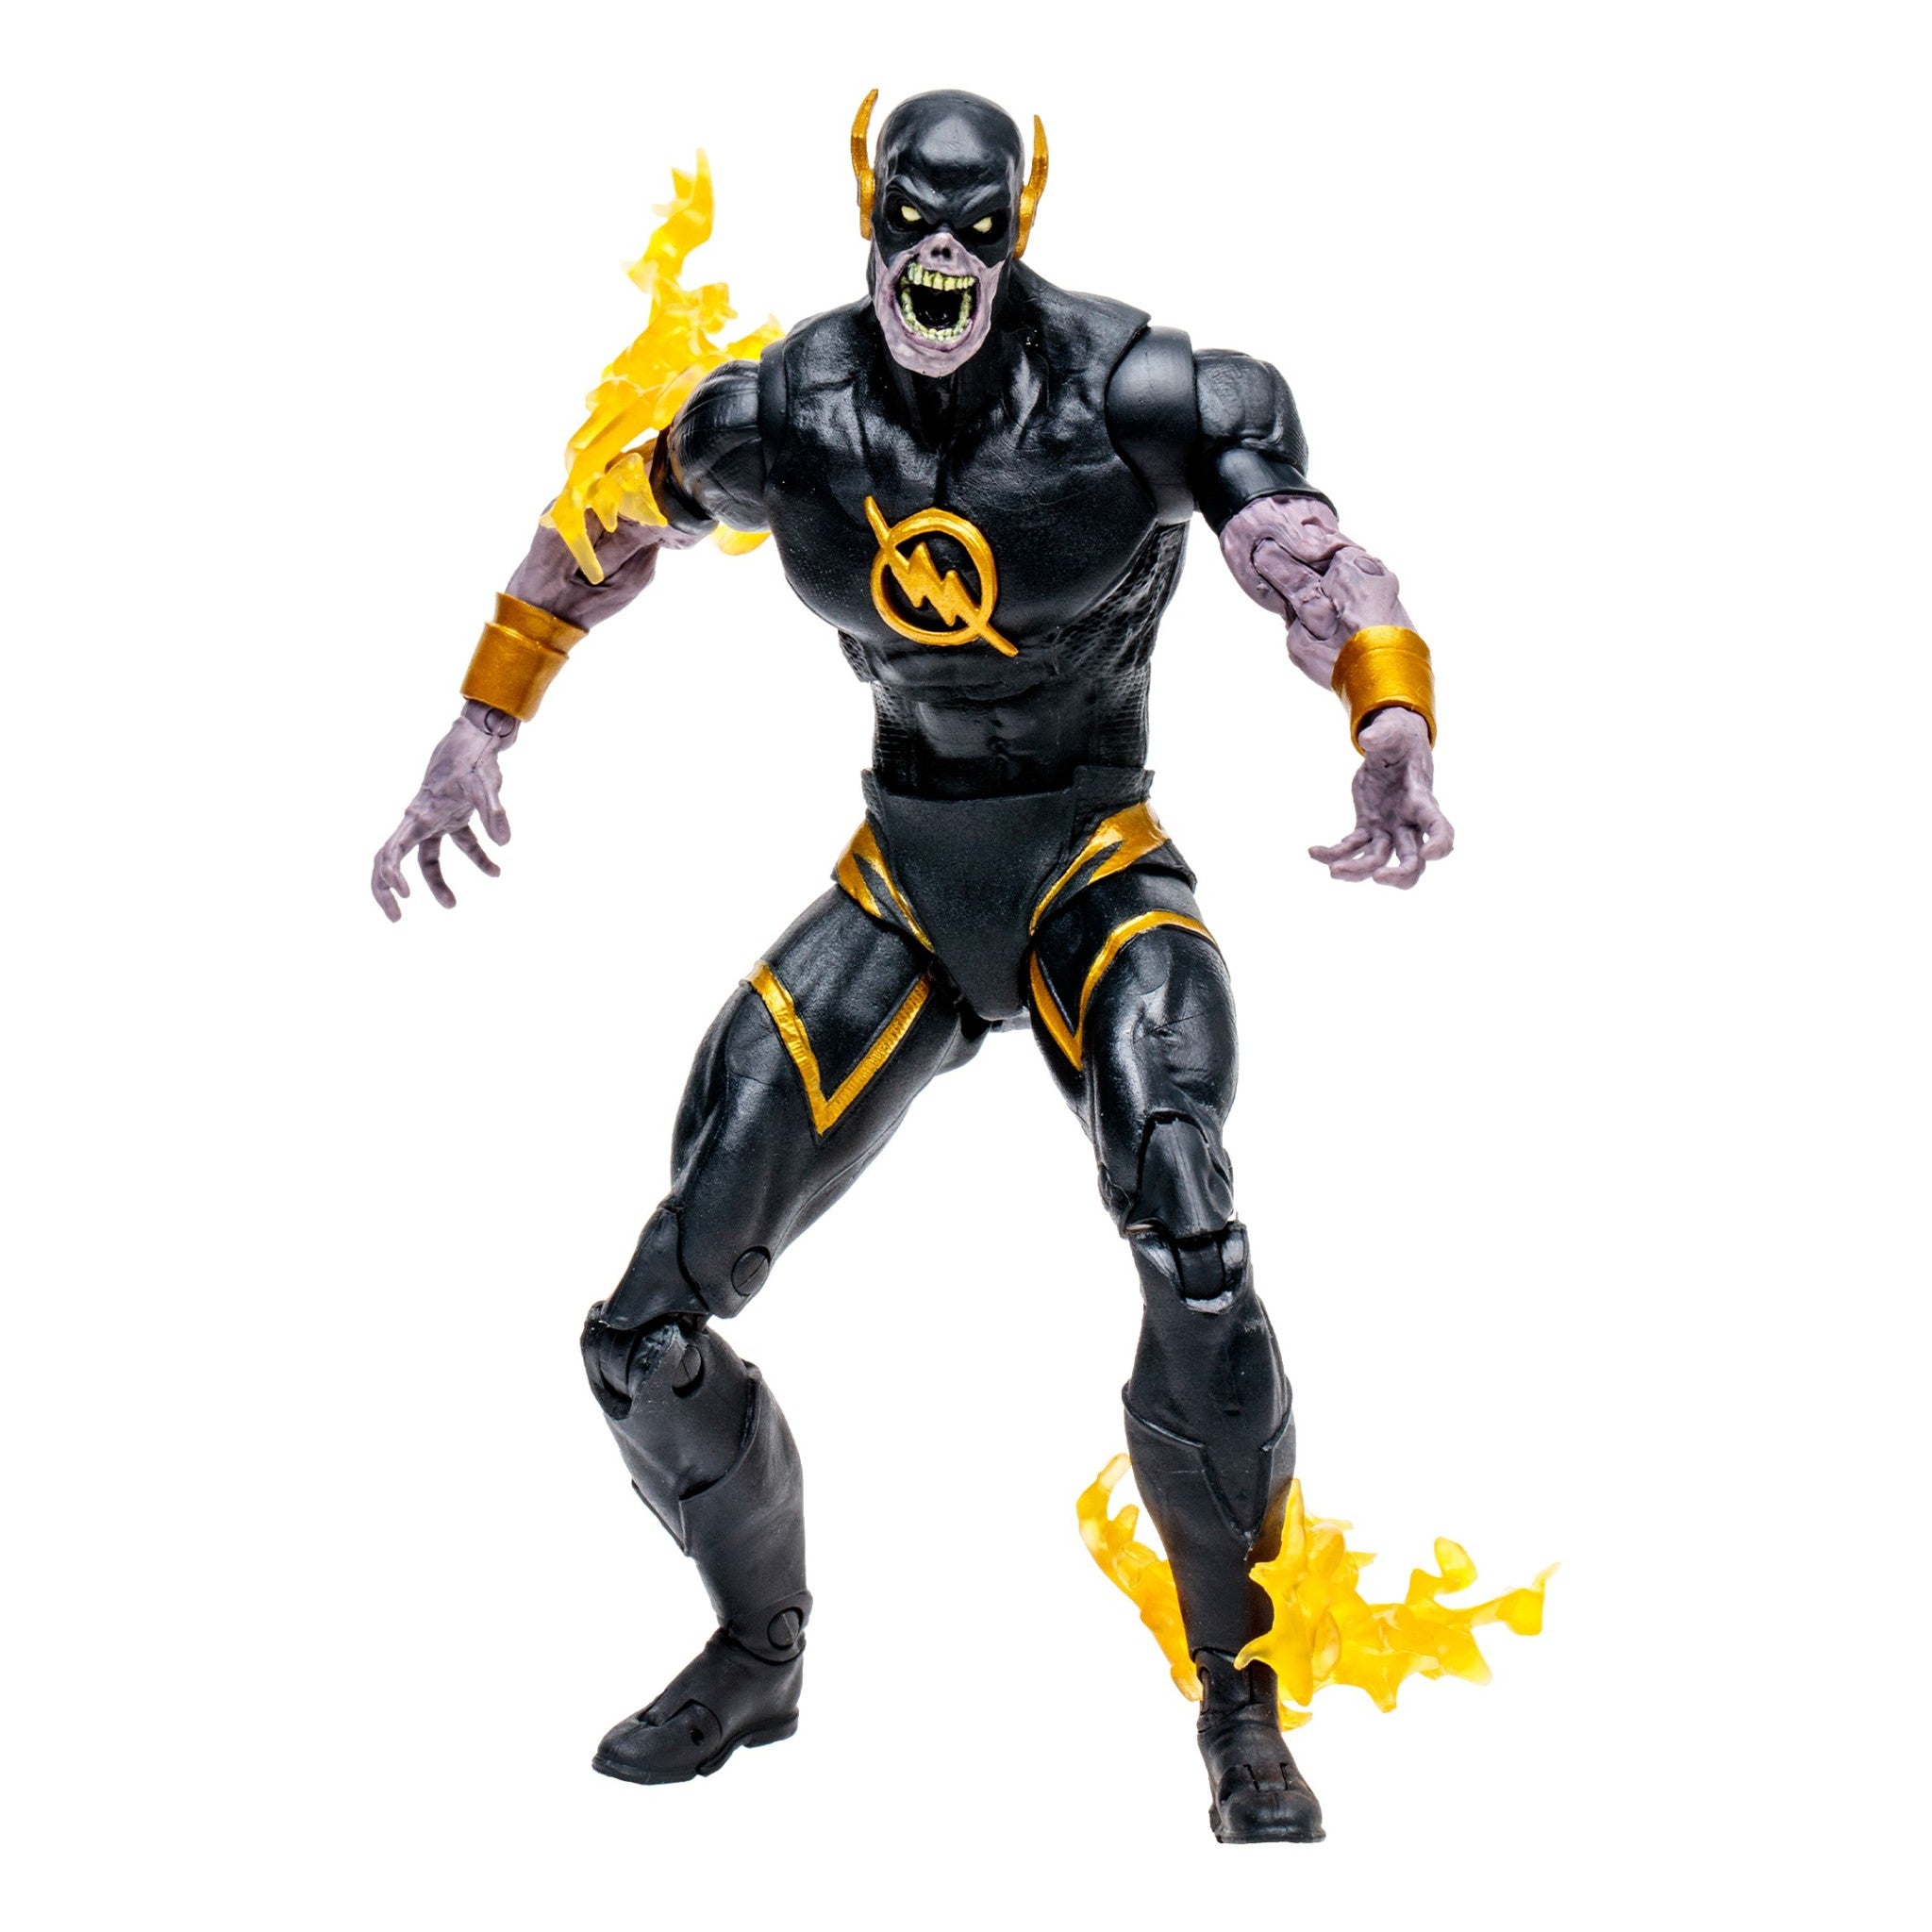 DC Multiverse Speed Metal Dark Flash Gold Label - McFarlane Toys